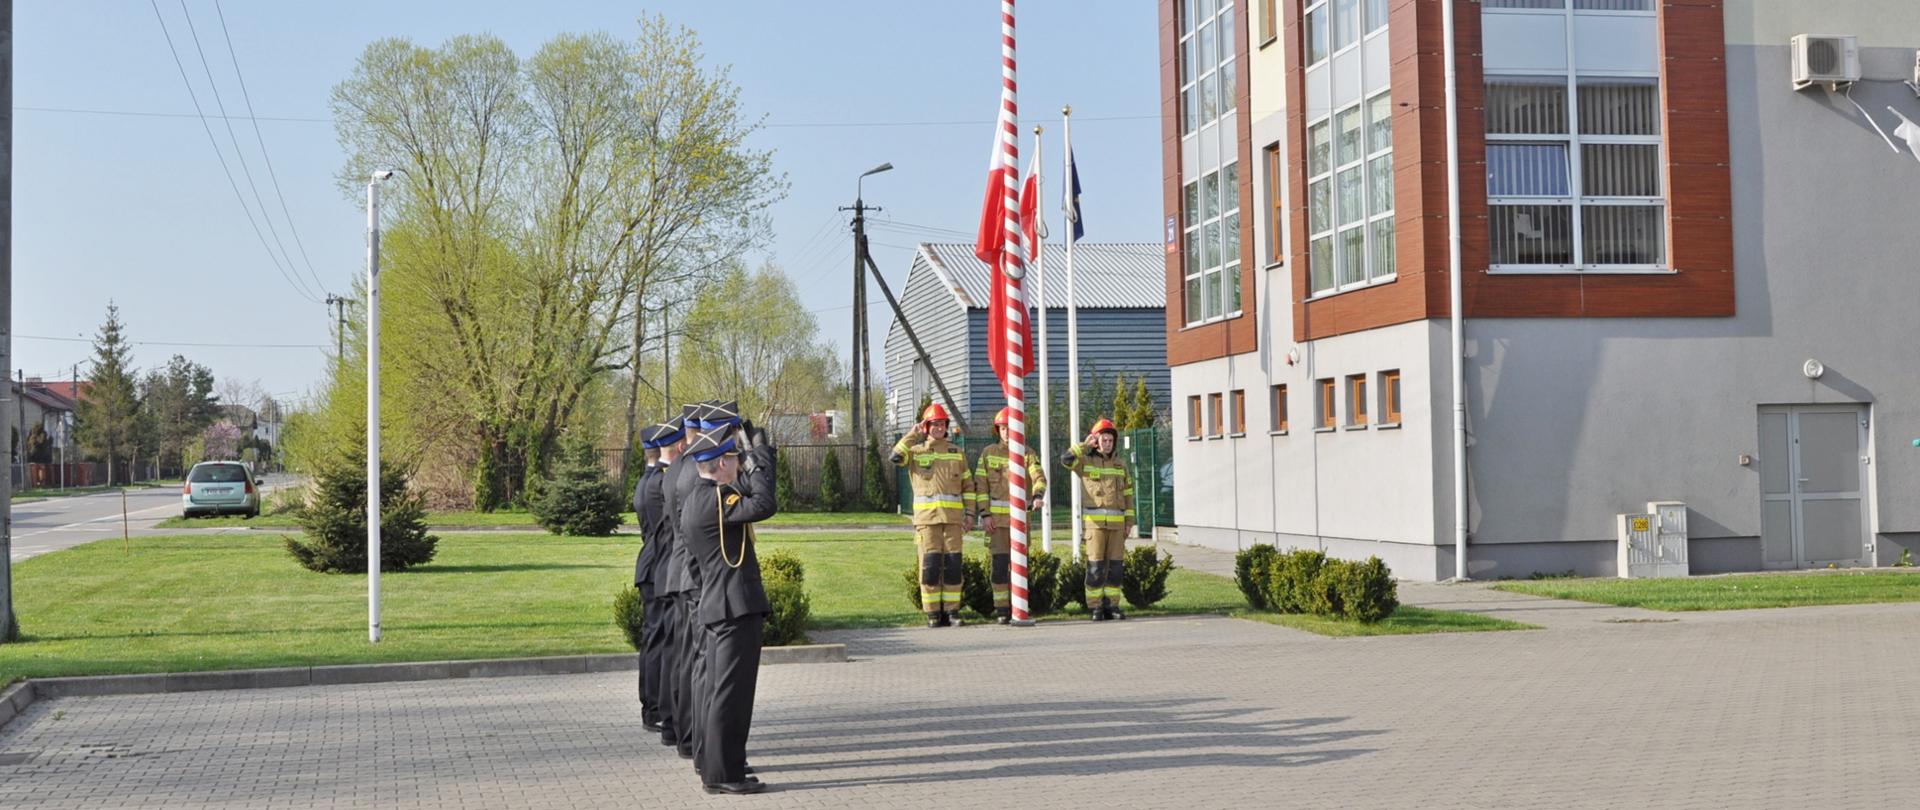 Uroczysta zbiórka z okazji święta flagi- strażacy stojący w strojach galowych.